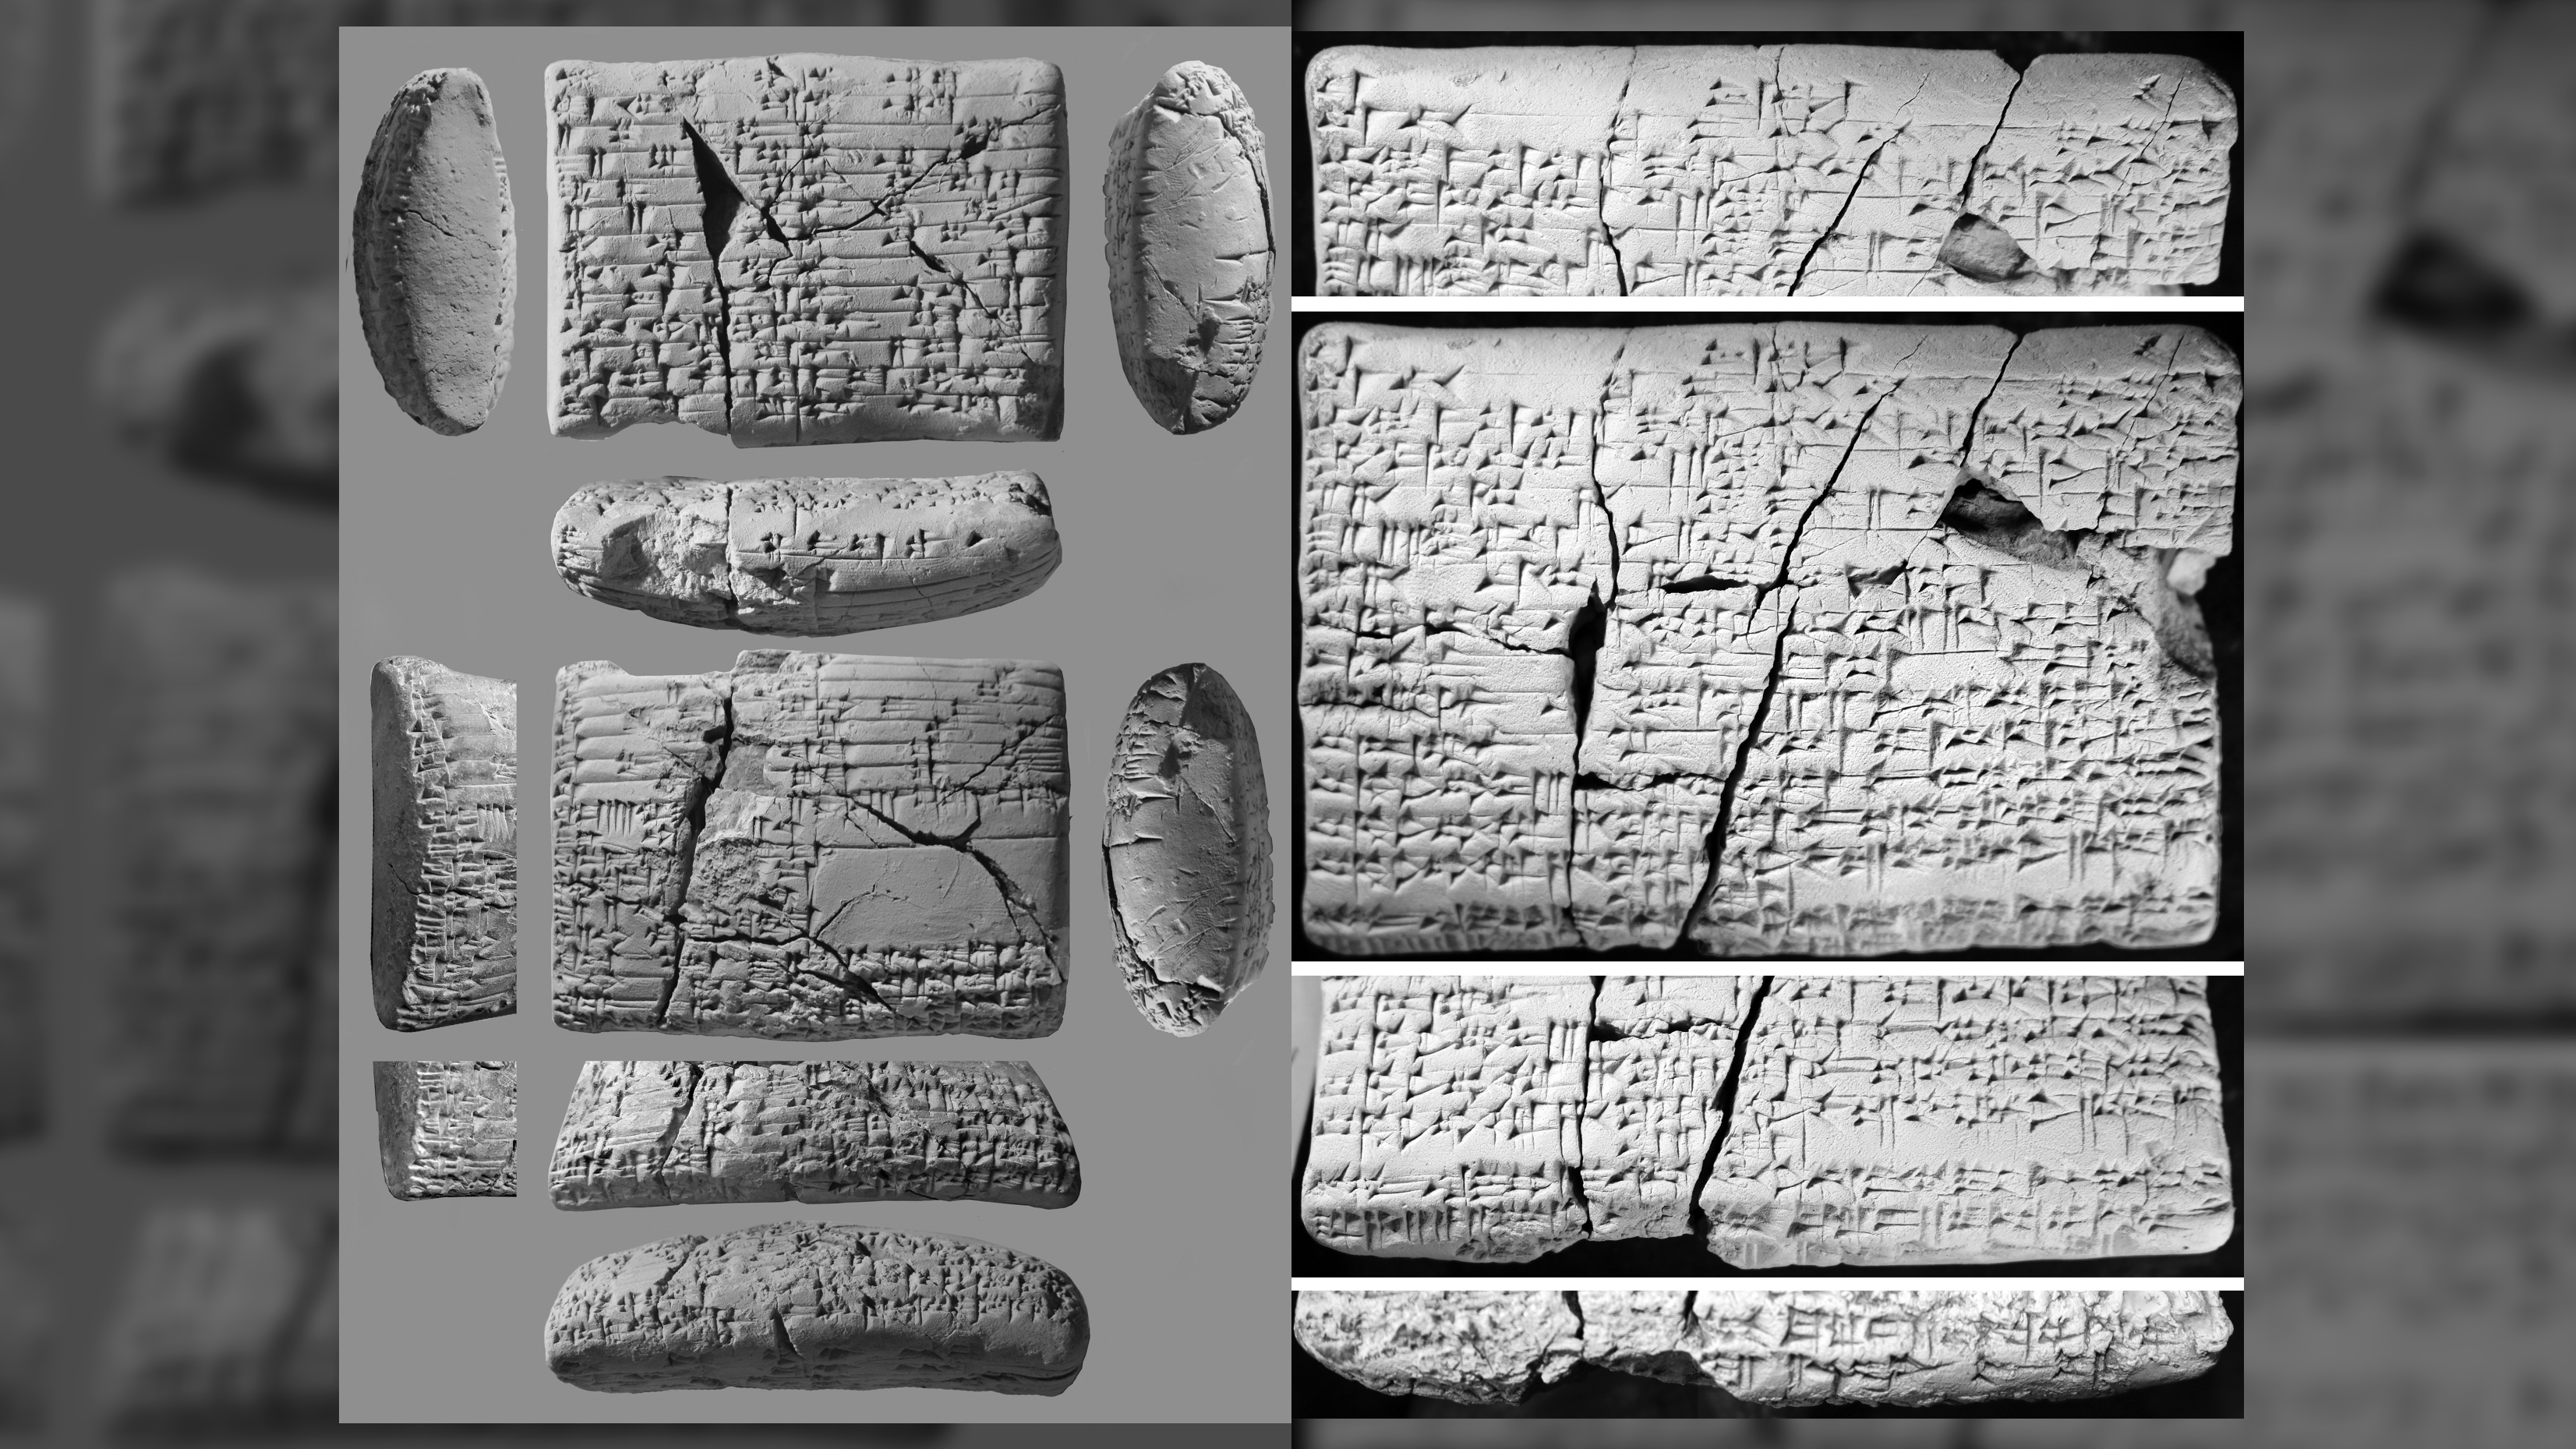 Une langue cananéenne énigmatique et perdue décodée sur des tablettes de type « Rosetta Stone »